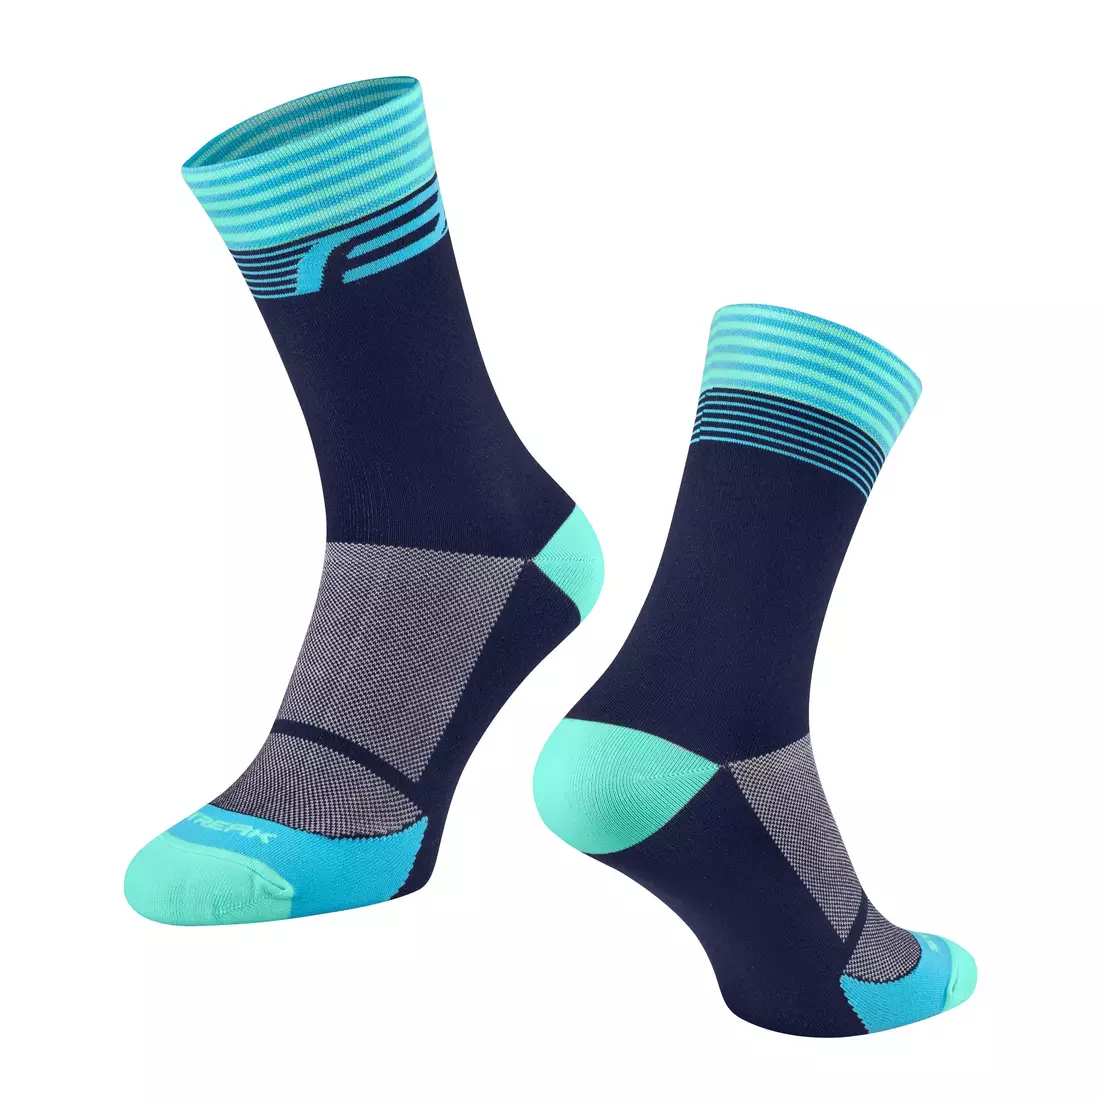 FORCE Športové ponožky STREAK, modro-tyrkysová, 9009129